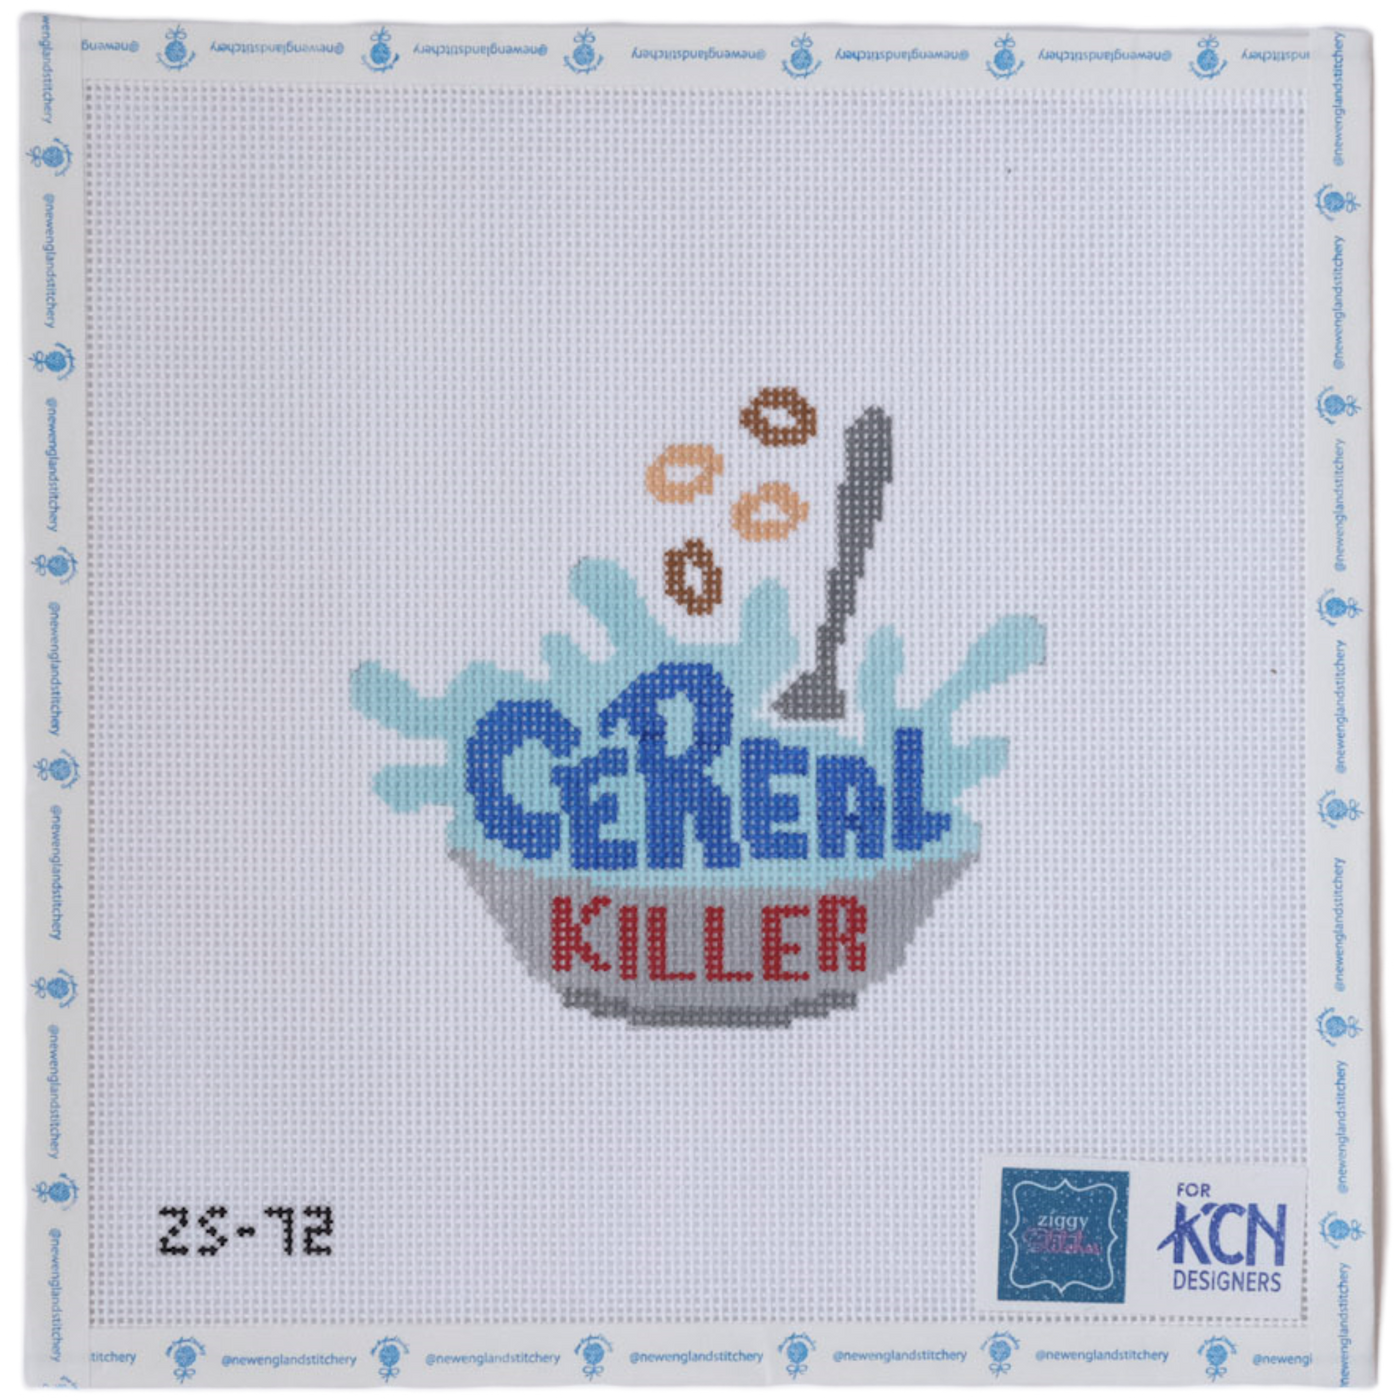 Cereal Killer